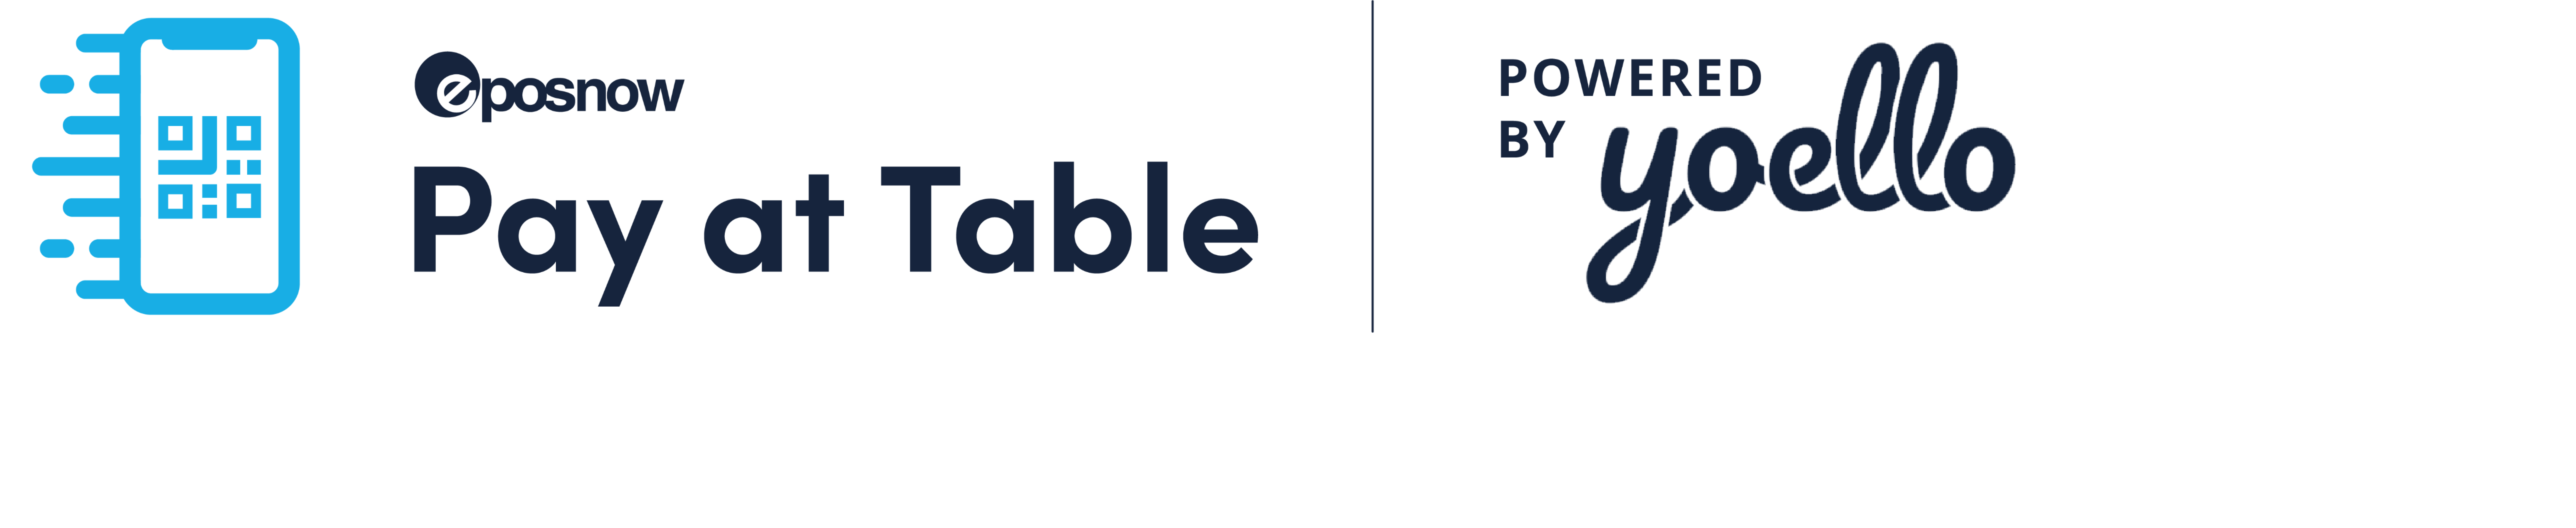 Pay at Table App Logo